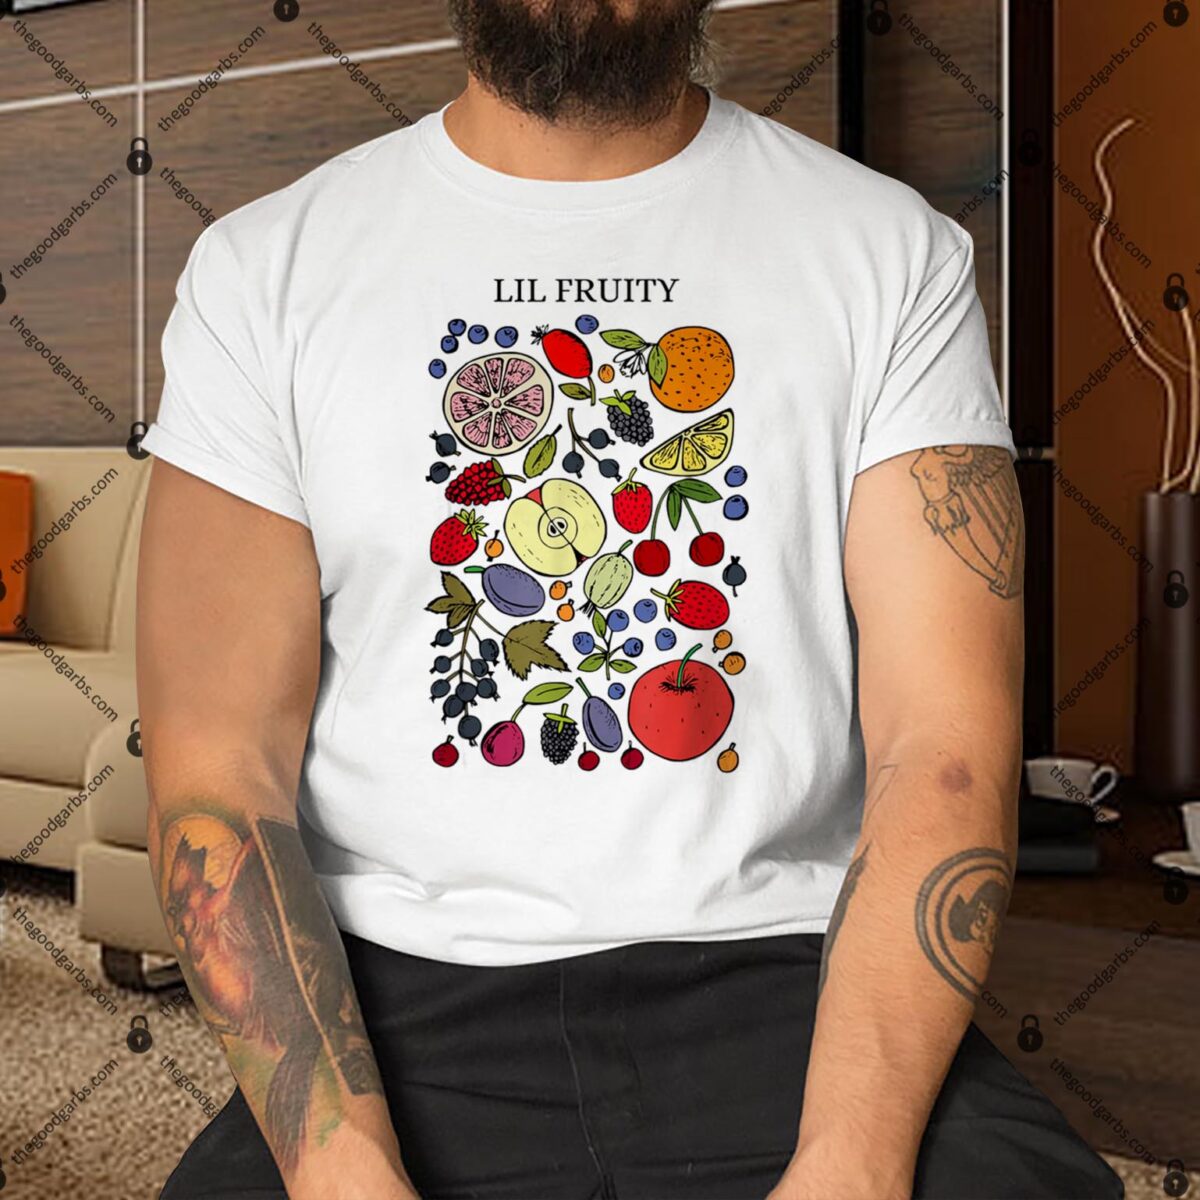 Lil Fruity LGBTQ Shirt